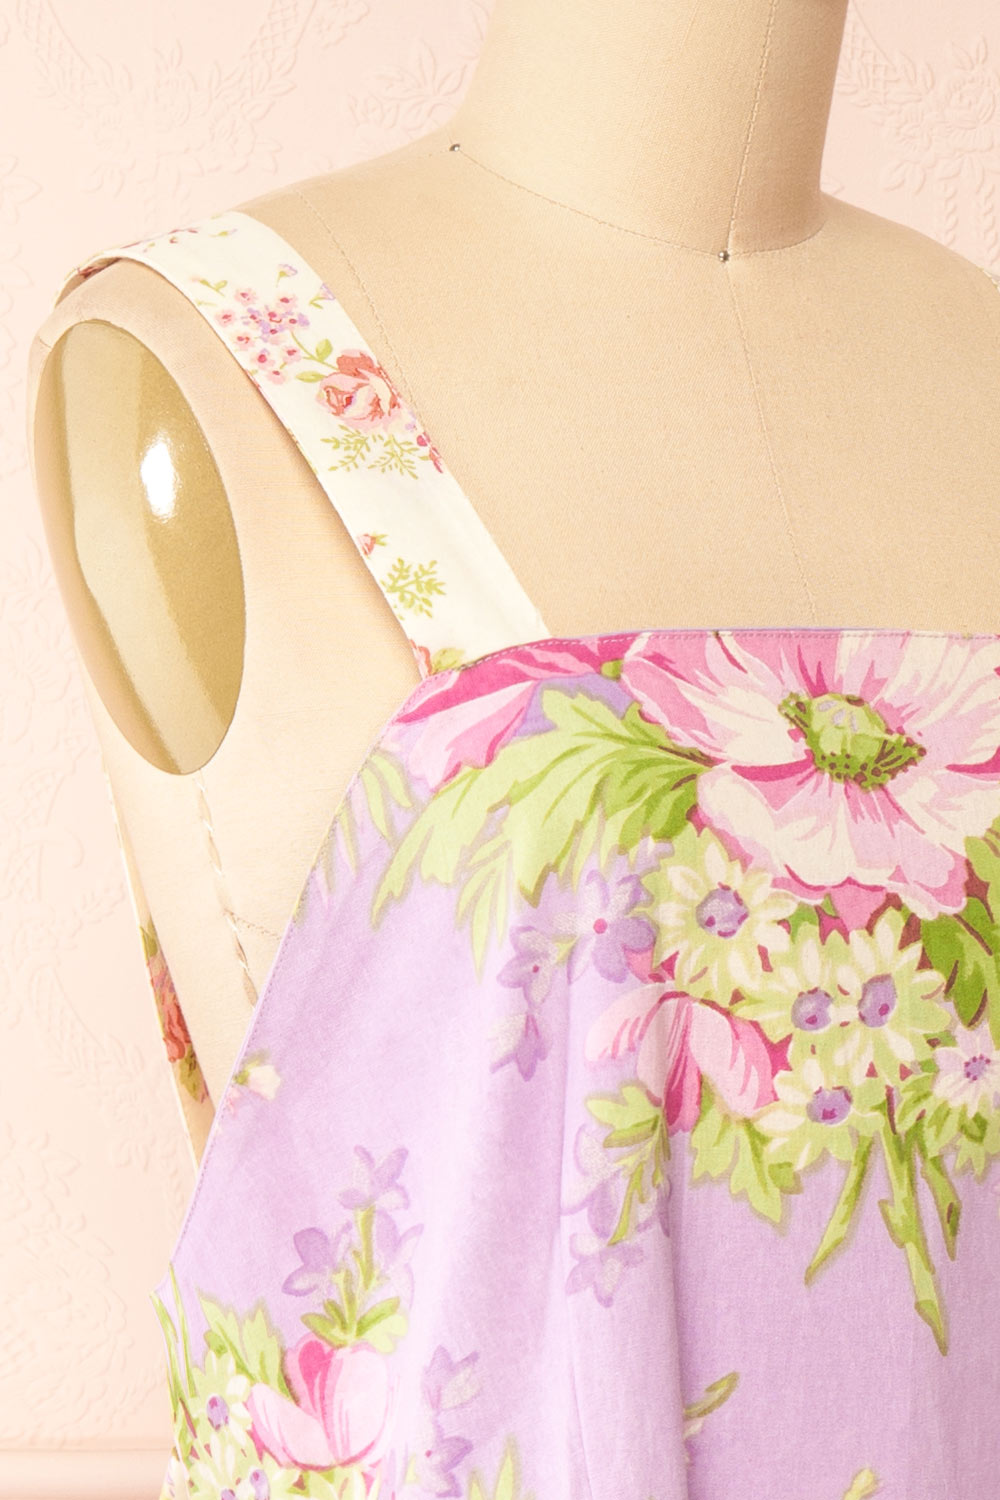 Dujour Gingham & Floral Patchwork Apron | Boutique 1861 side close-up